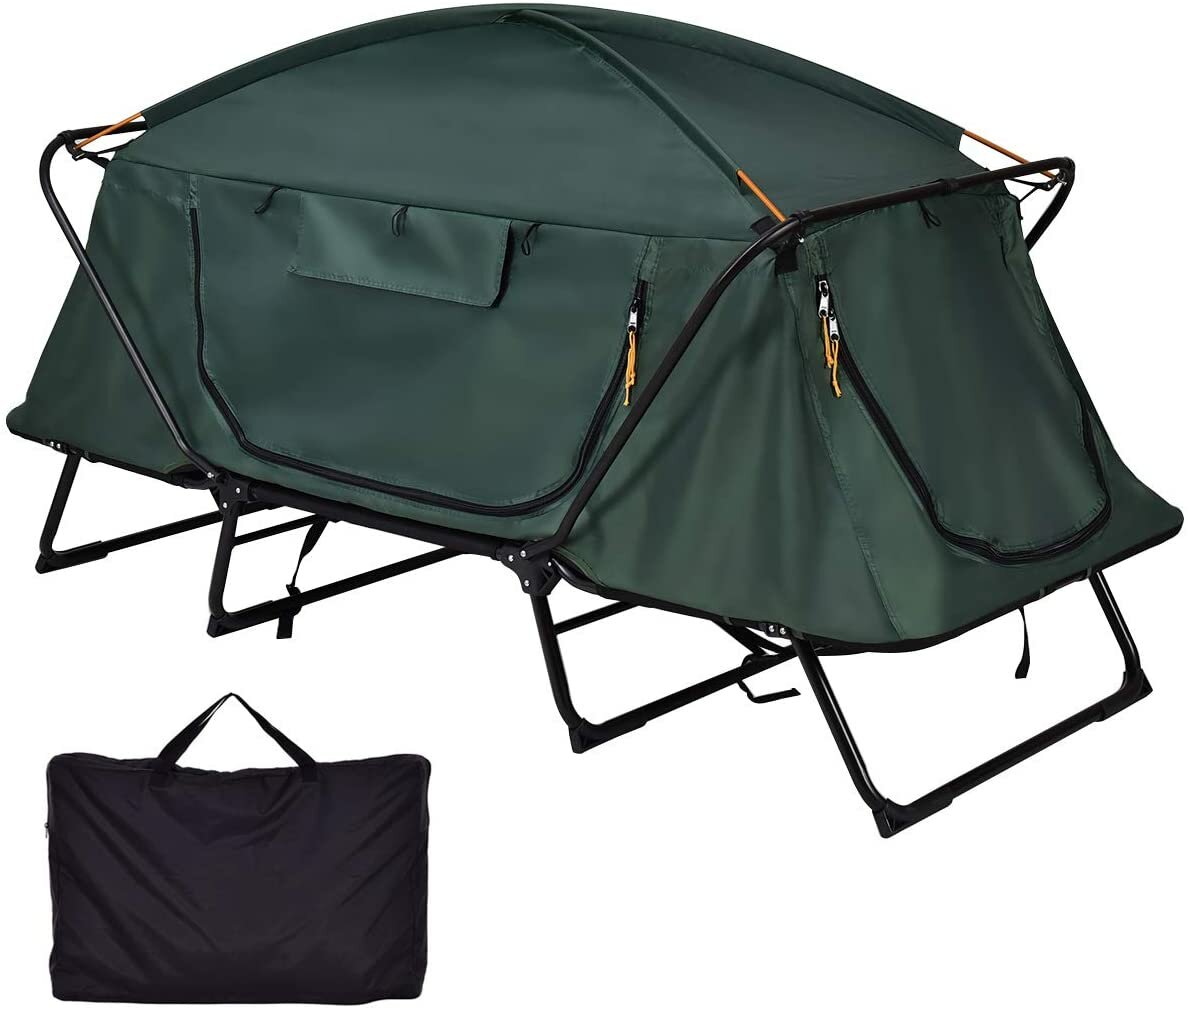 Namiot dla 2 osób Off The Ground składany wodoodporny podwójna warstwa chroniący przed zimnem przeciwwiatrowy parasol kopułowy do wędrówek i podróży z torbą na ramię.